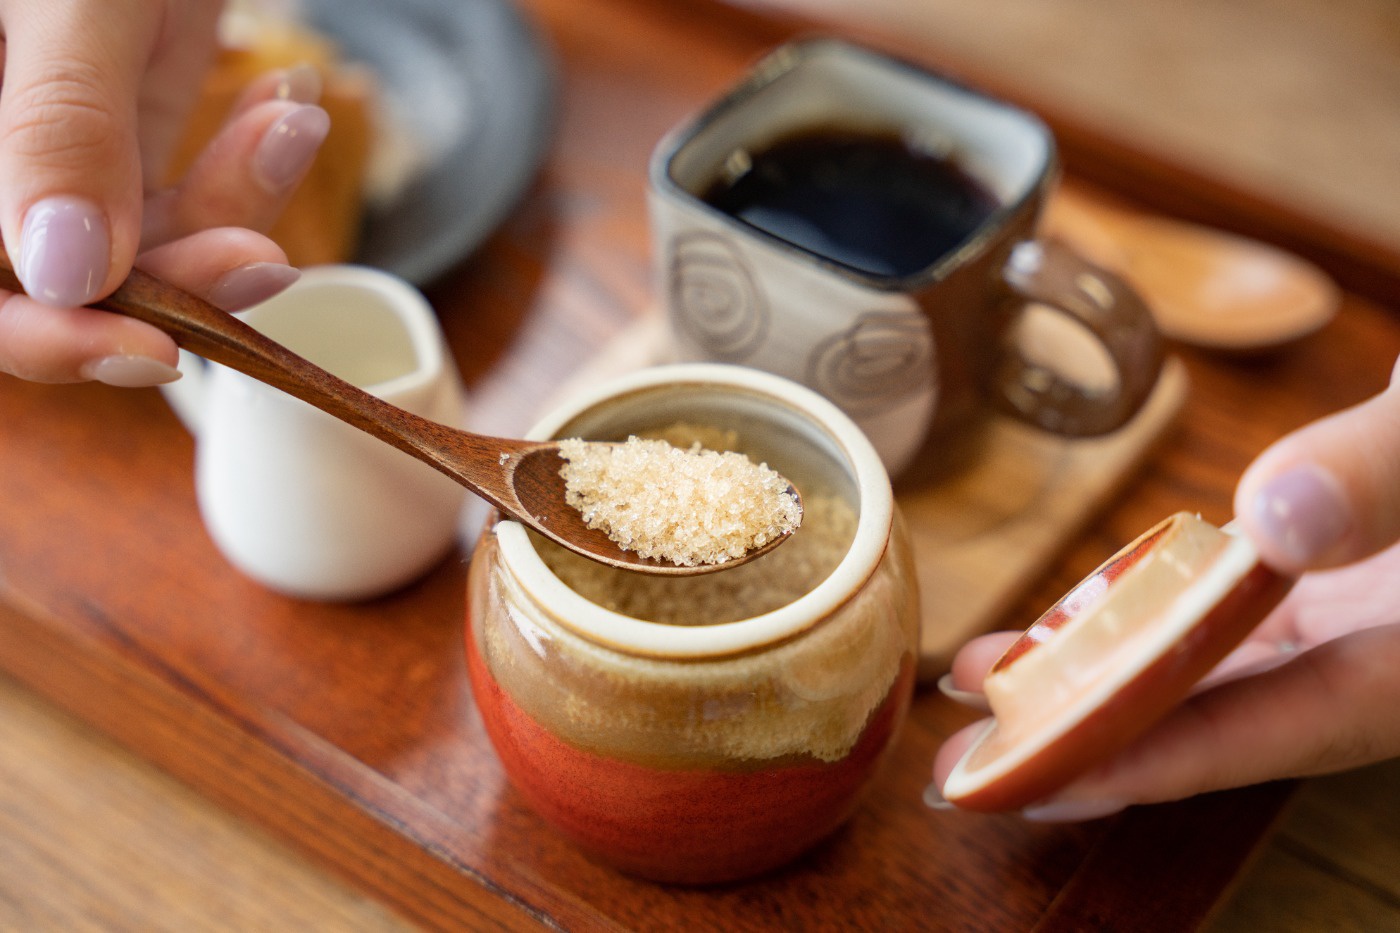 香南アグリーム さぬき母めしカフェのスイーツやコーヒーシュガーには鹿児島県種子島産さとうきびで作られた砂糖を使用